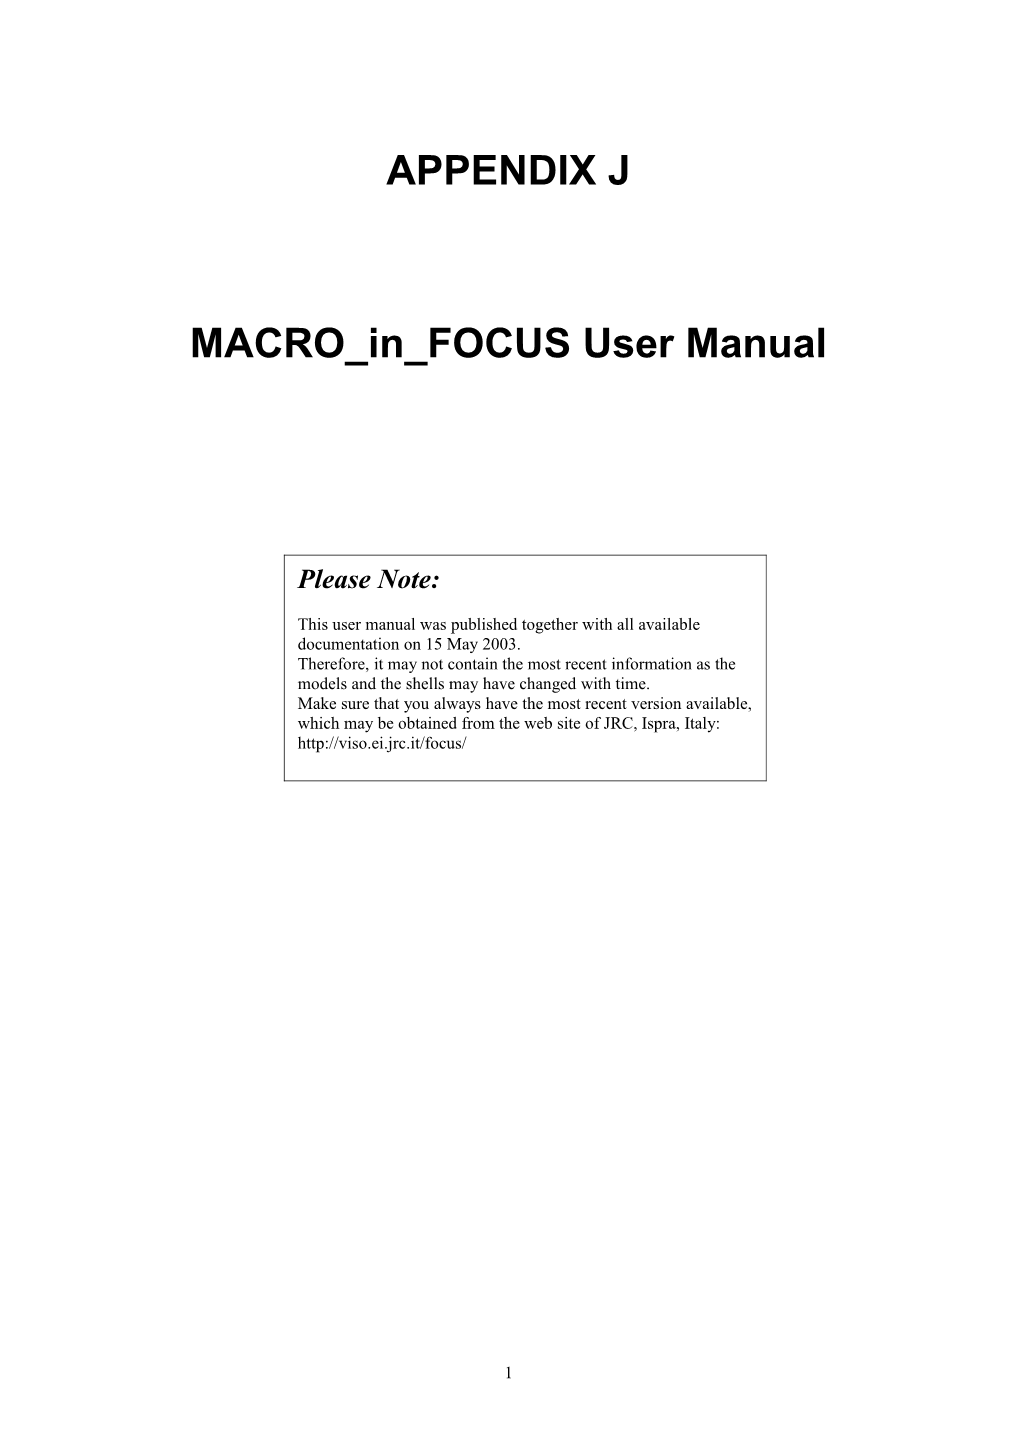 MACRO in FOCUS : User Guide